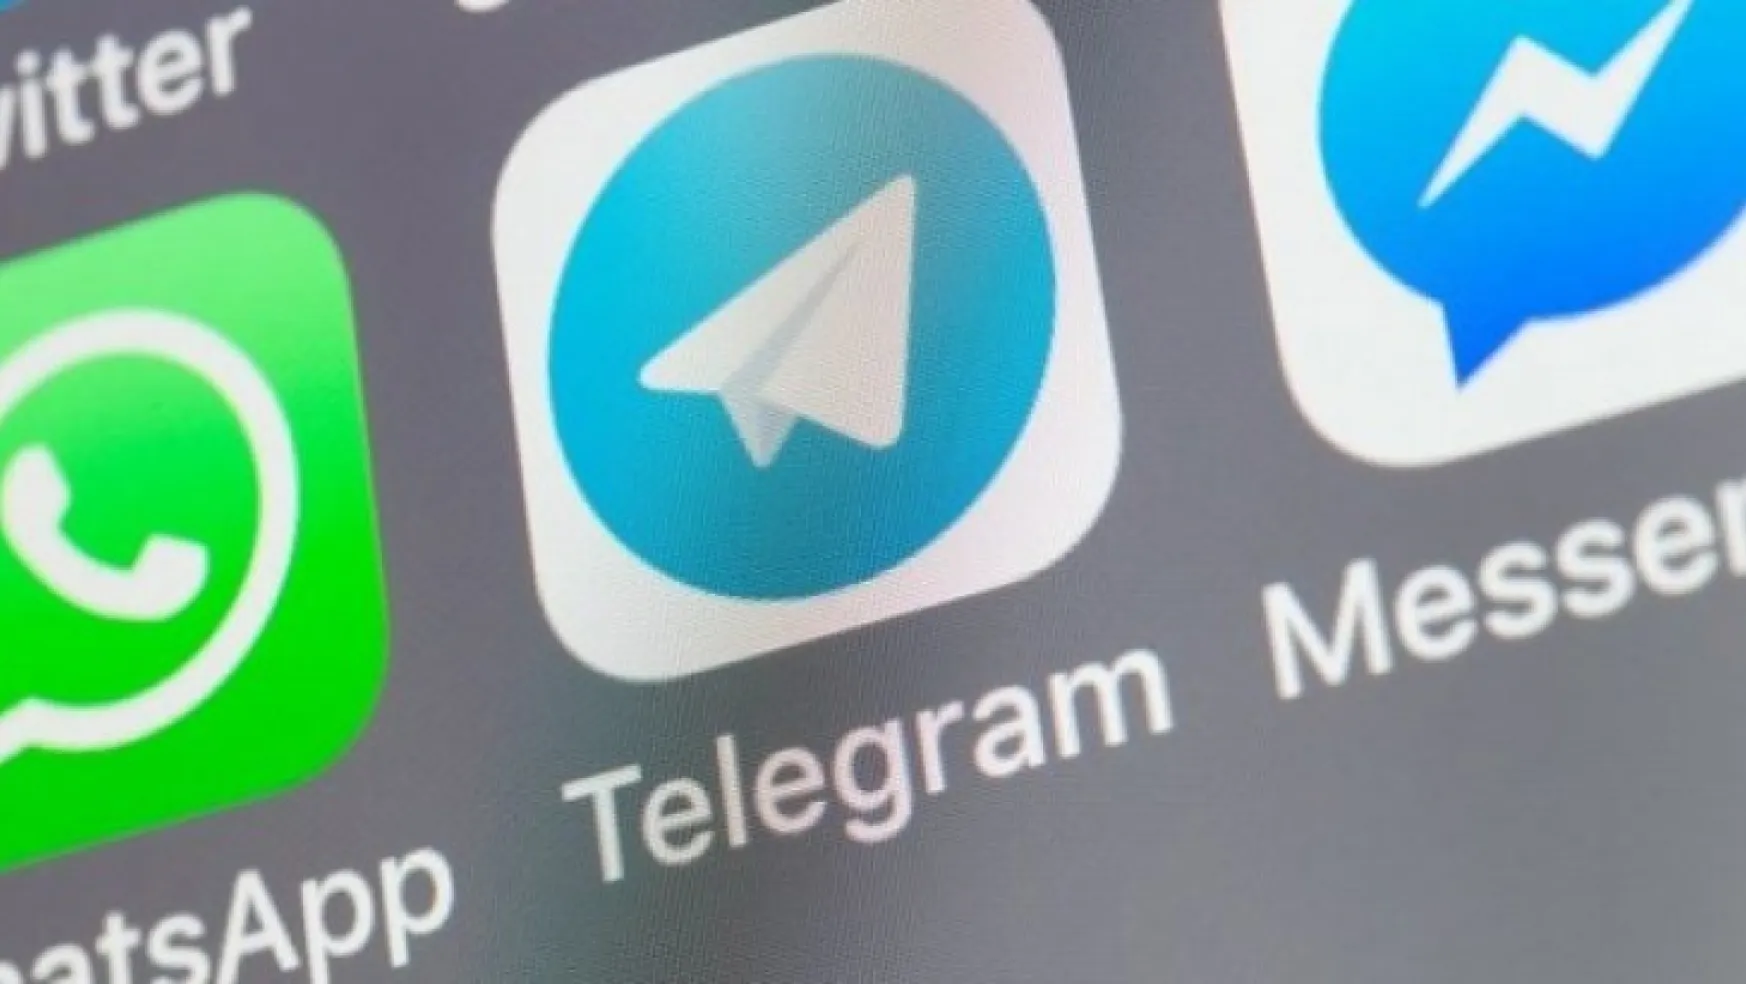 Kamu Çalışanlarına WhatsApp Telegram gibi yabancı uygulamalar yasak!